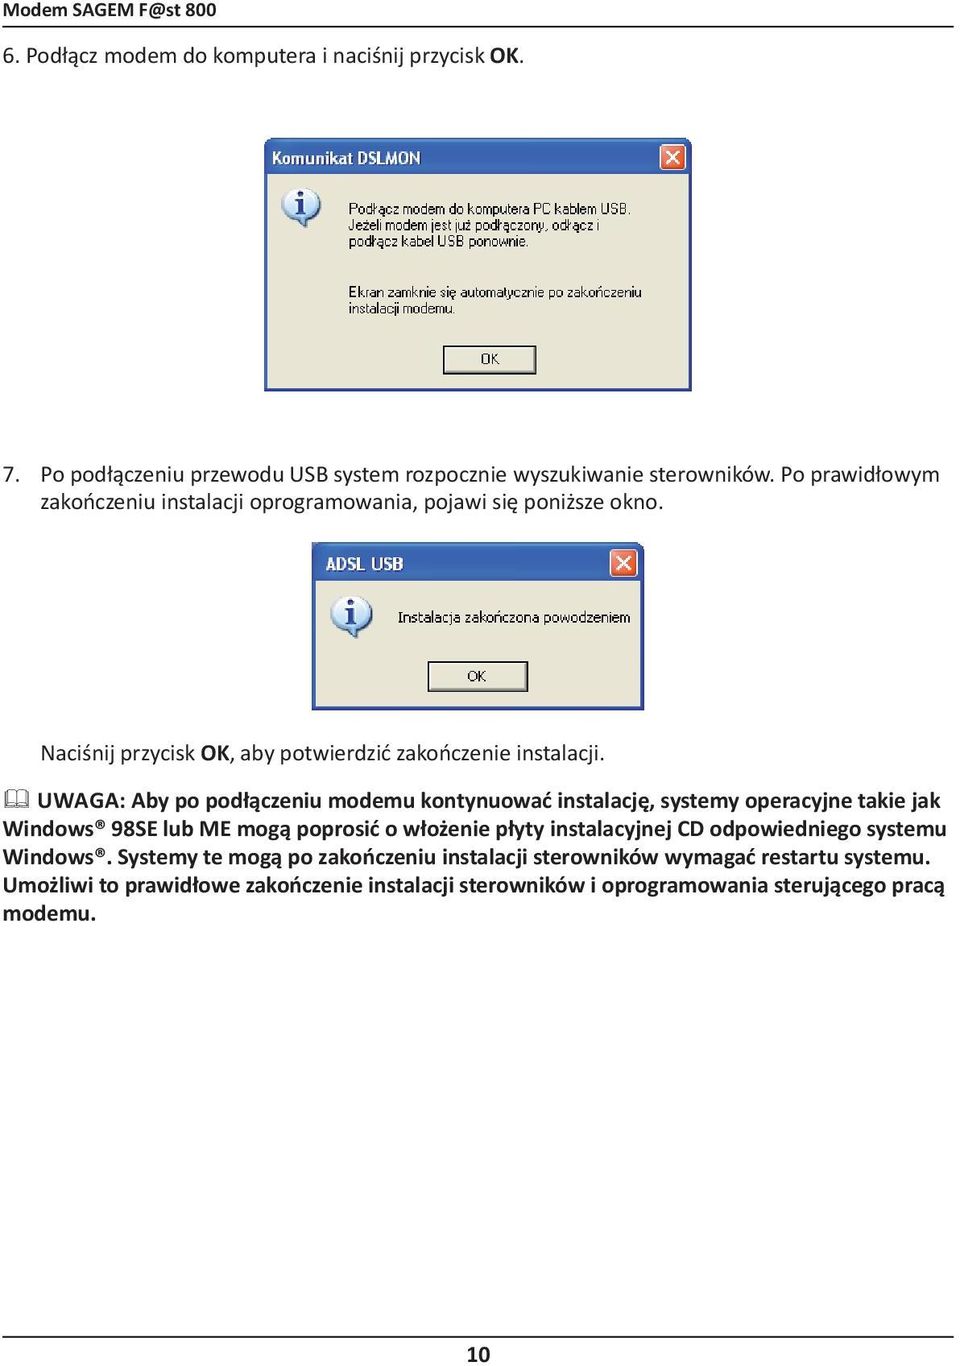 Uwaga: Aby po podłączeniu modemu kontynuować instalację, systemy operacyjne takie jak Windows 98SE lub ME mogą poprosić o włożenie płyty instalacyjnej CD